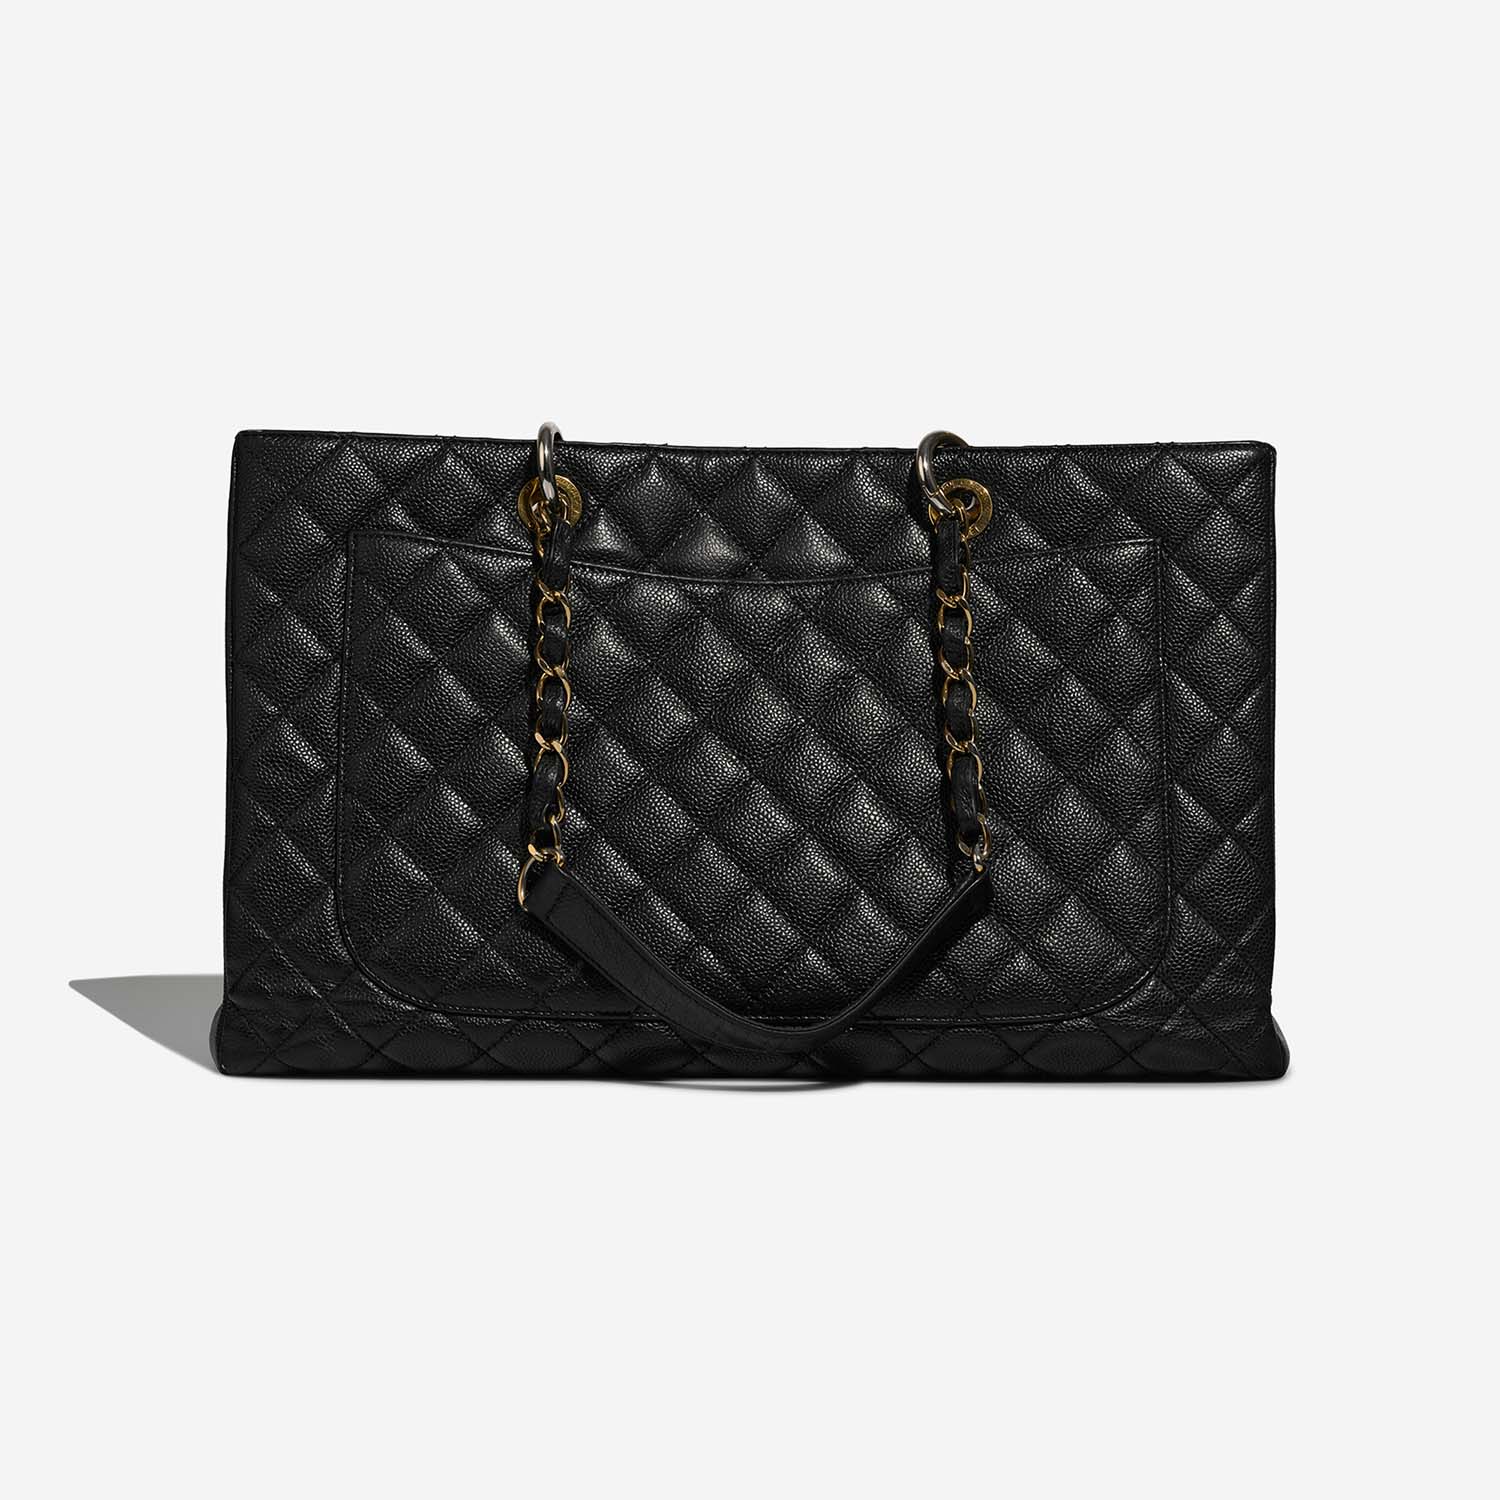 Chanel GST Black Back | Sell your designer bag on Saclab.com